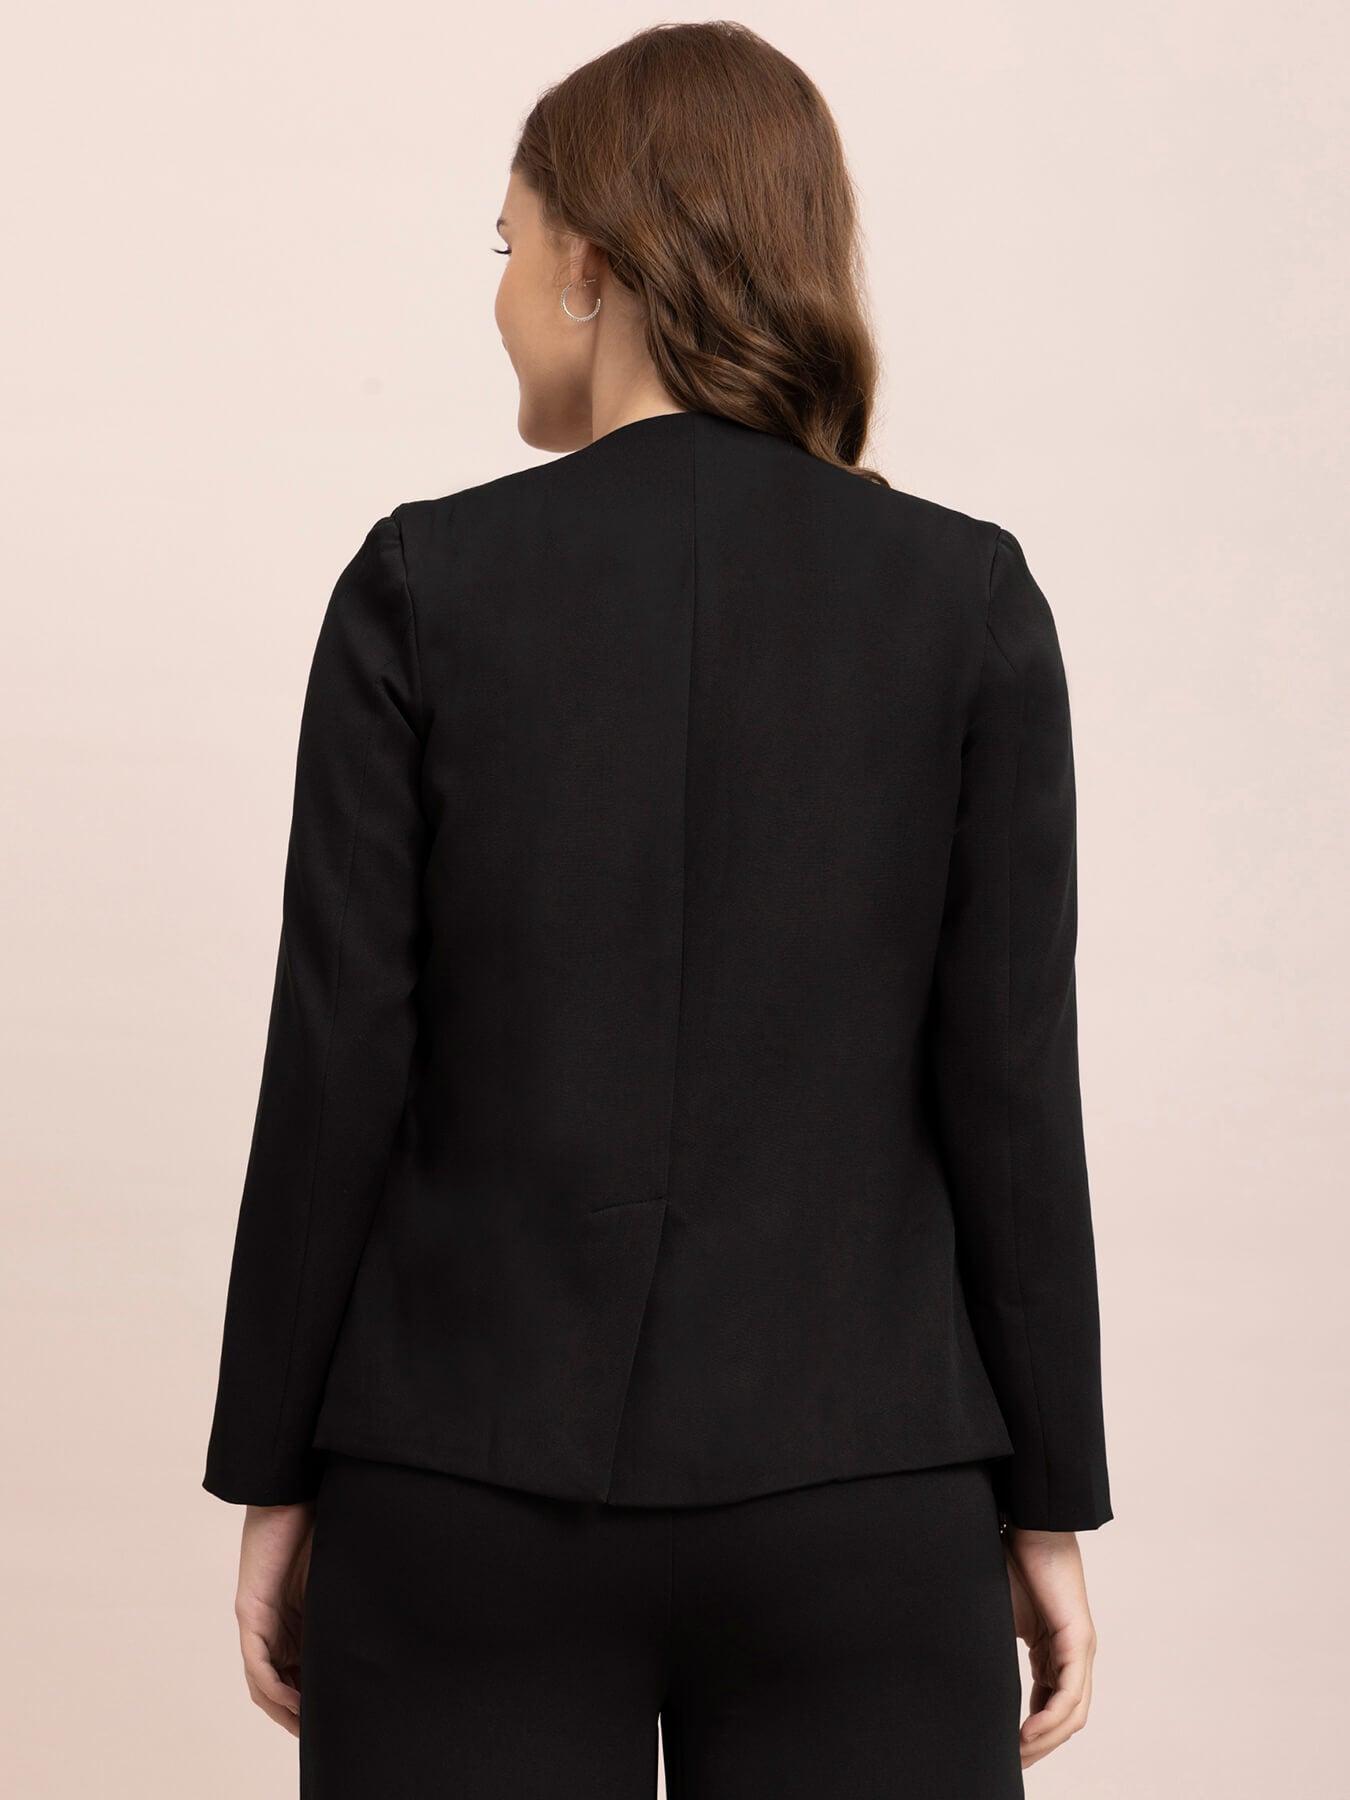 Solid Formal Jacket - Black| Formal Jackets